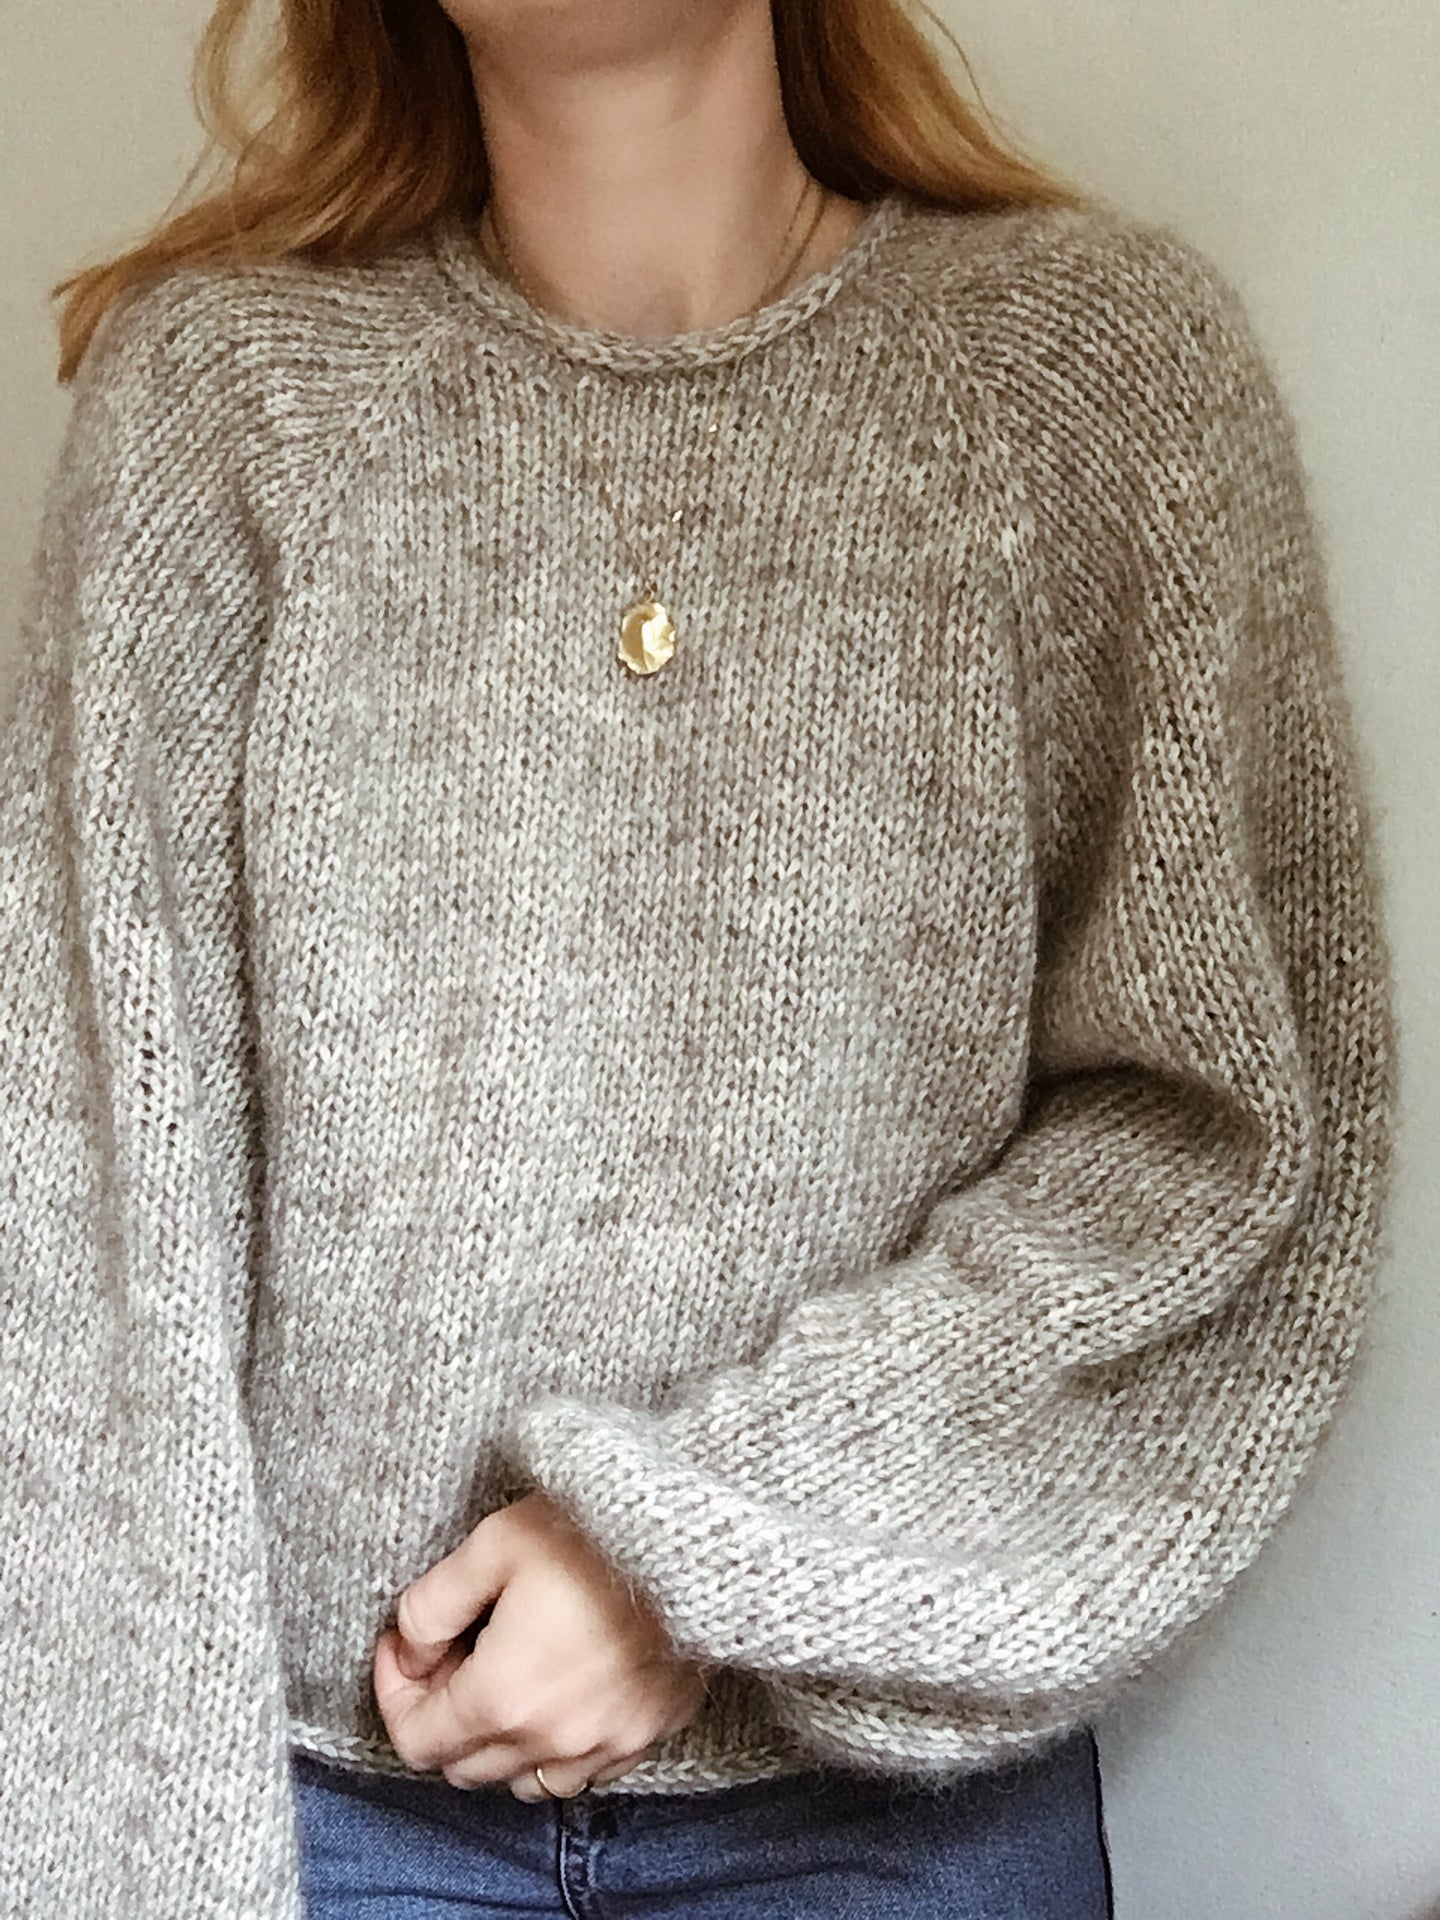 Sweater No. 6 - DEUTSCH